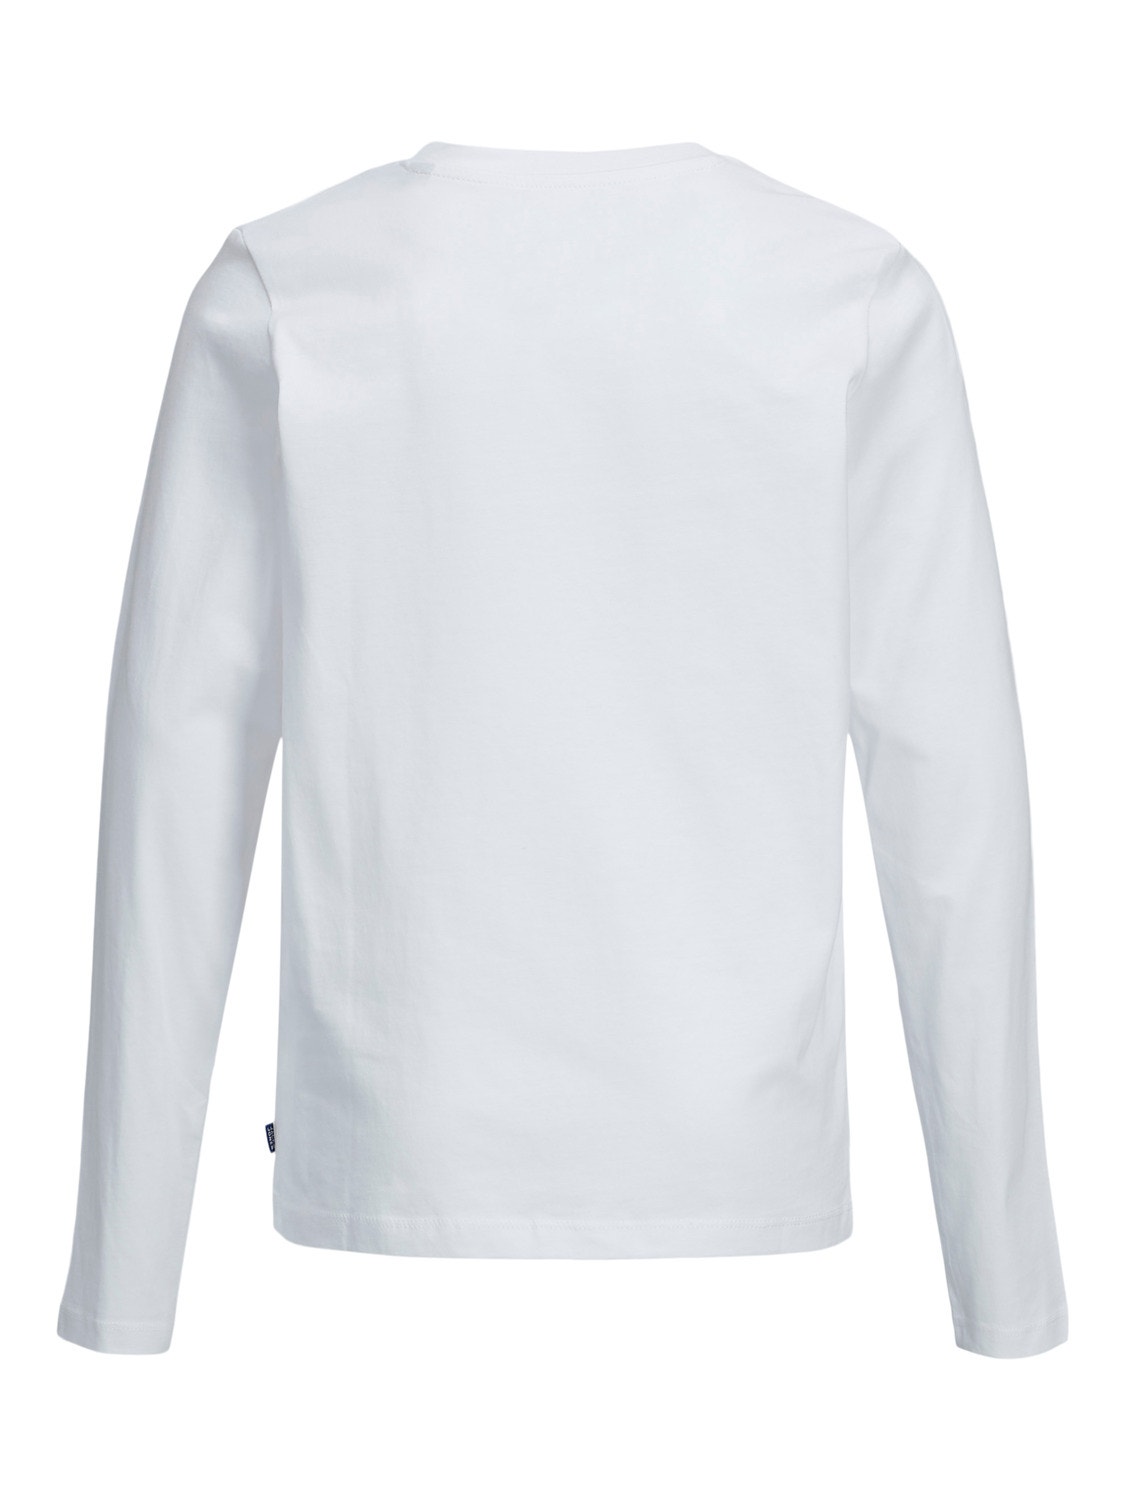 Jack & Jones Gładki T-shirt Dla chłopców -White - 12197050